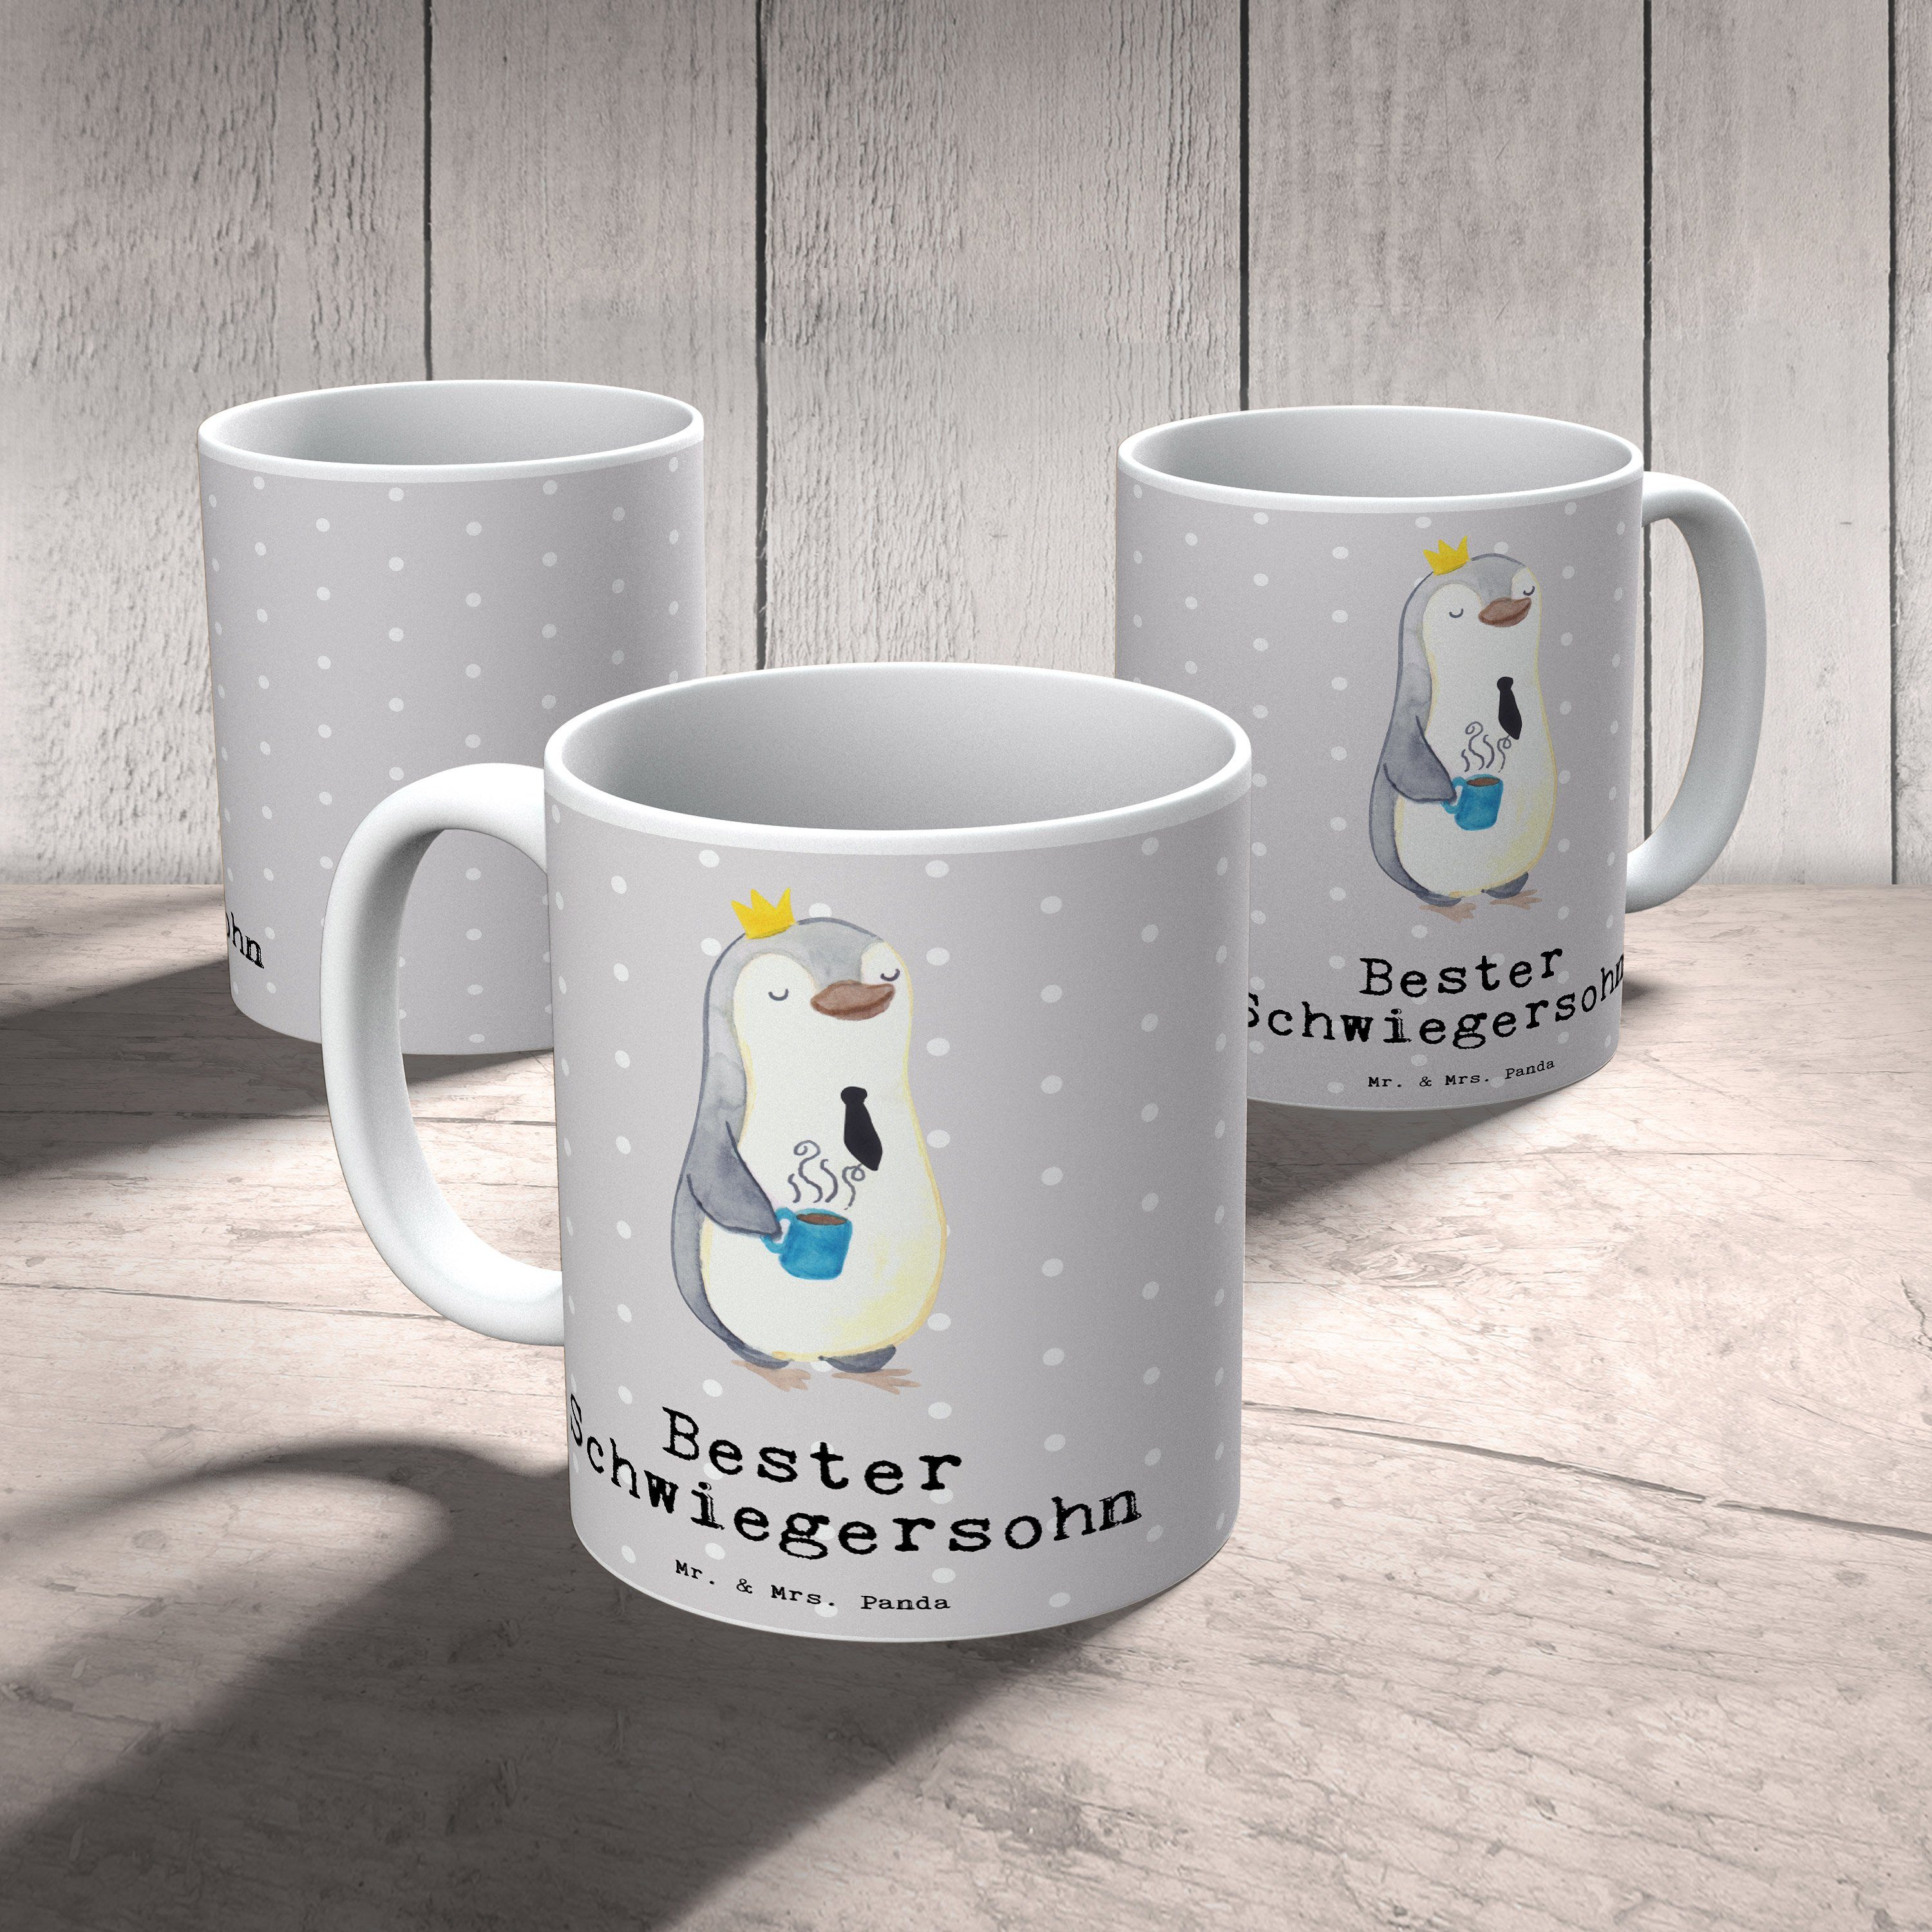 Pinguin Tasse Keramik Bester Ka, Geschenk, - Panda Mr. Grau Mrs. & Schwiegersohn Frühstück, Pastell -